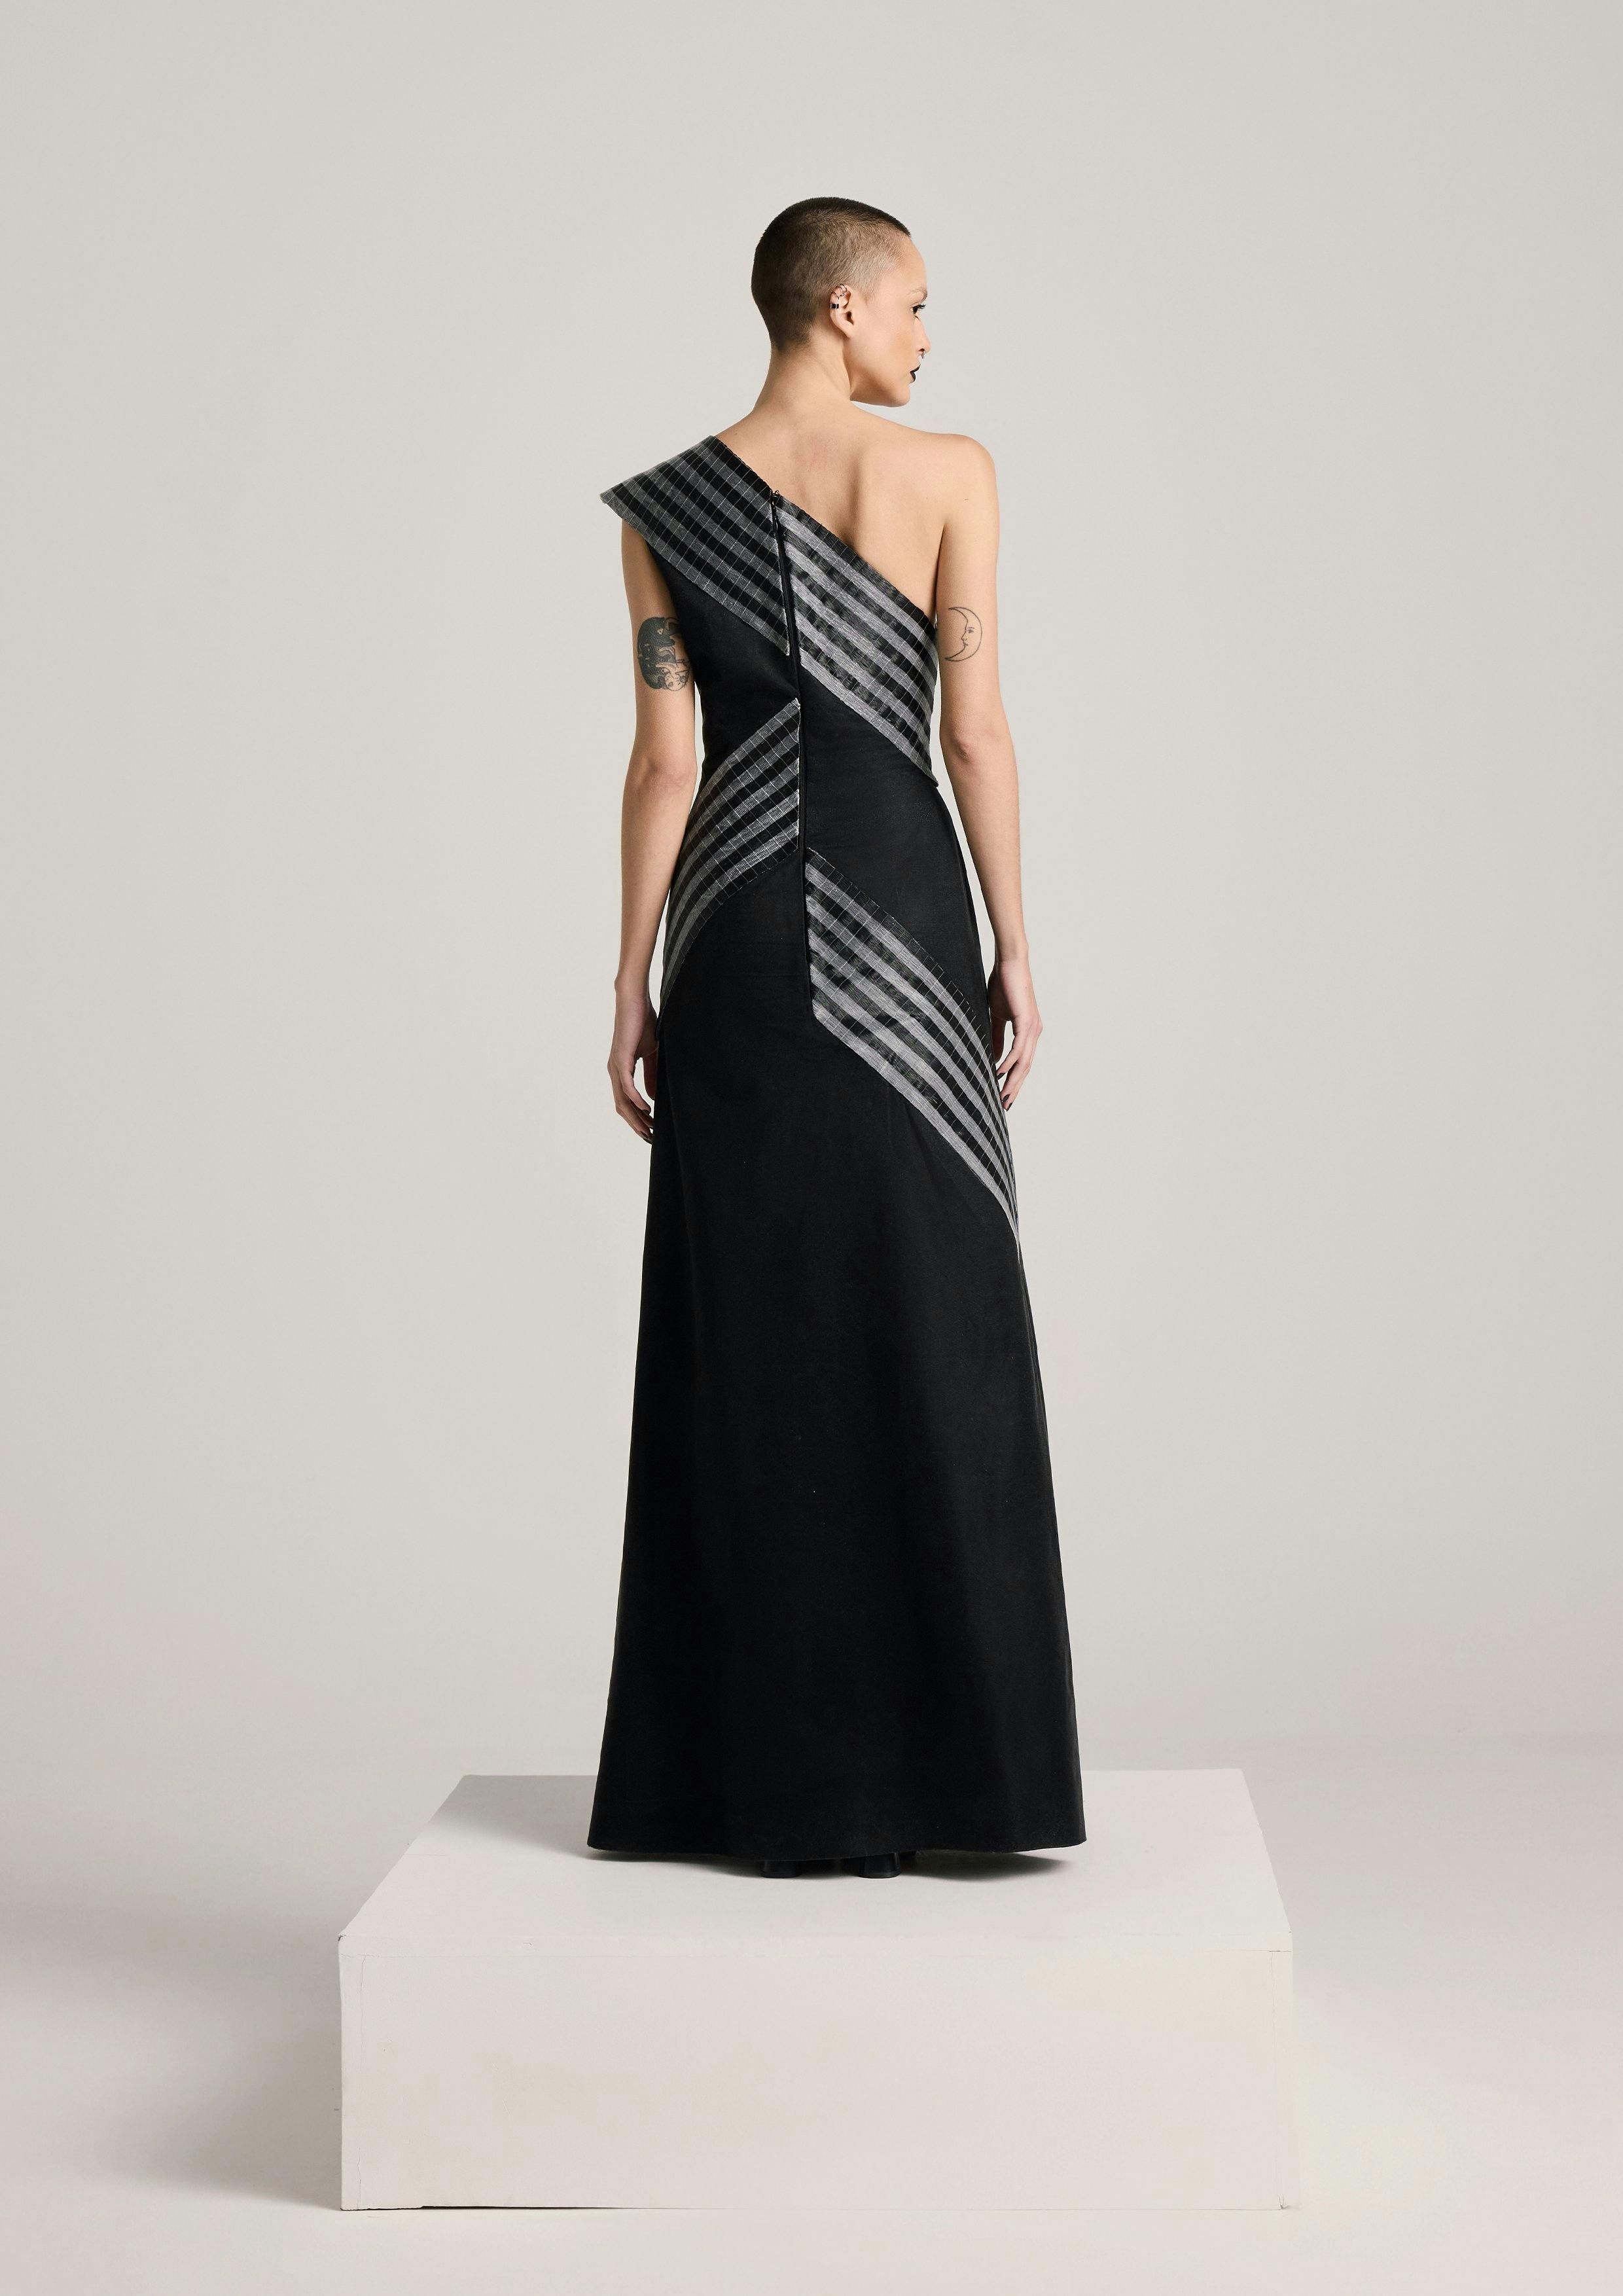 Thumbnail preview #2 for Asymmetric Glass Dress